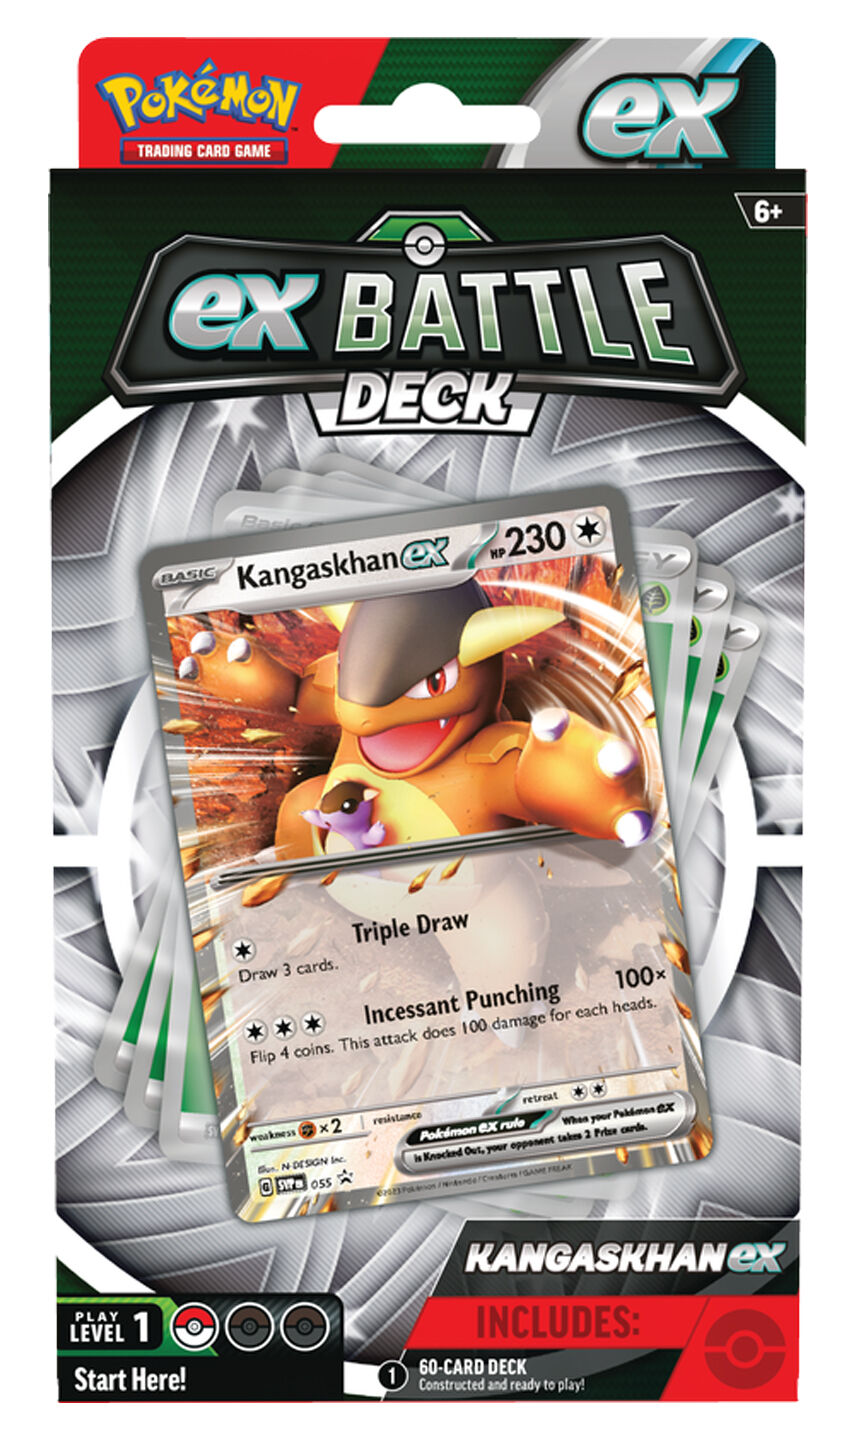 Pokémon TCG Kangashkan ex Battle Deck - EN